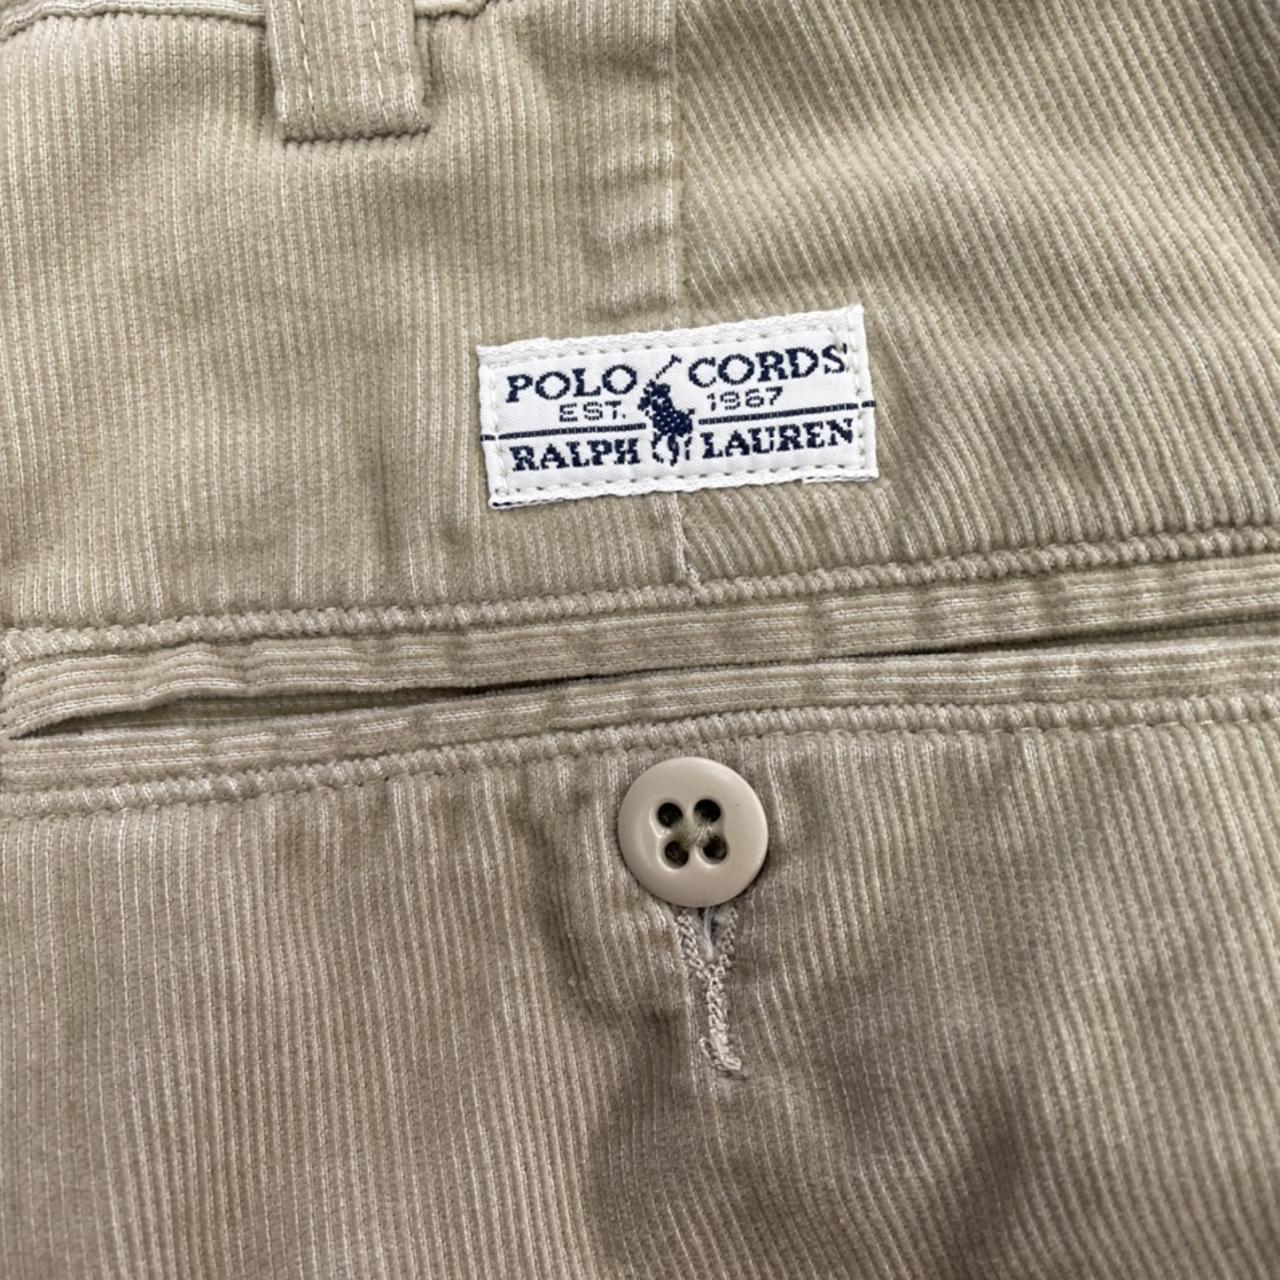 Vintage Ralph Lauren Polo Cords corduroy pants. Tag... - Depop